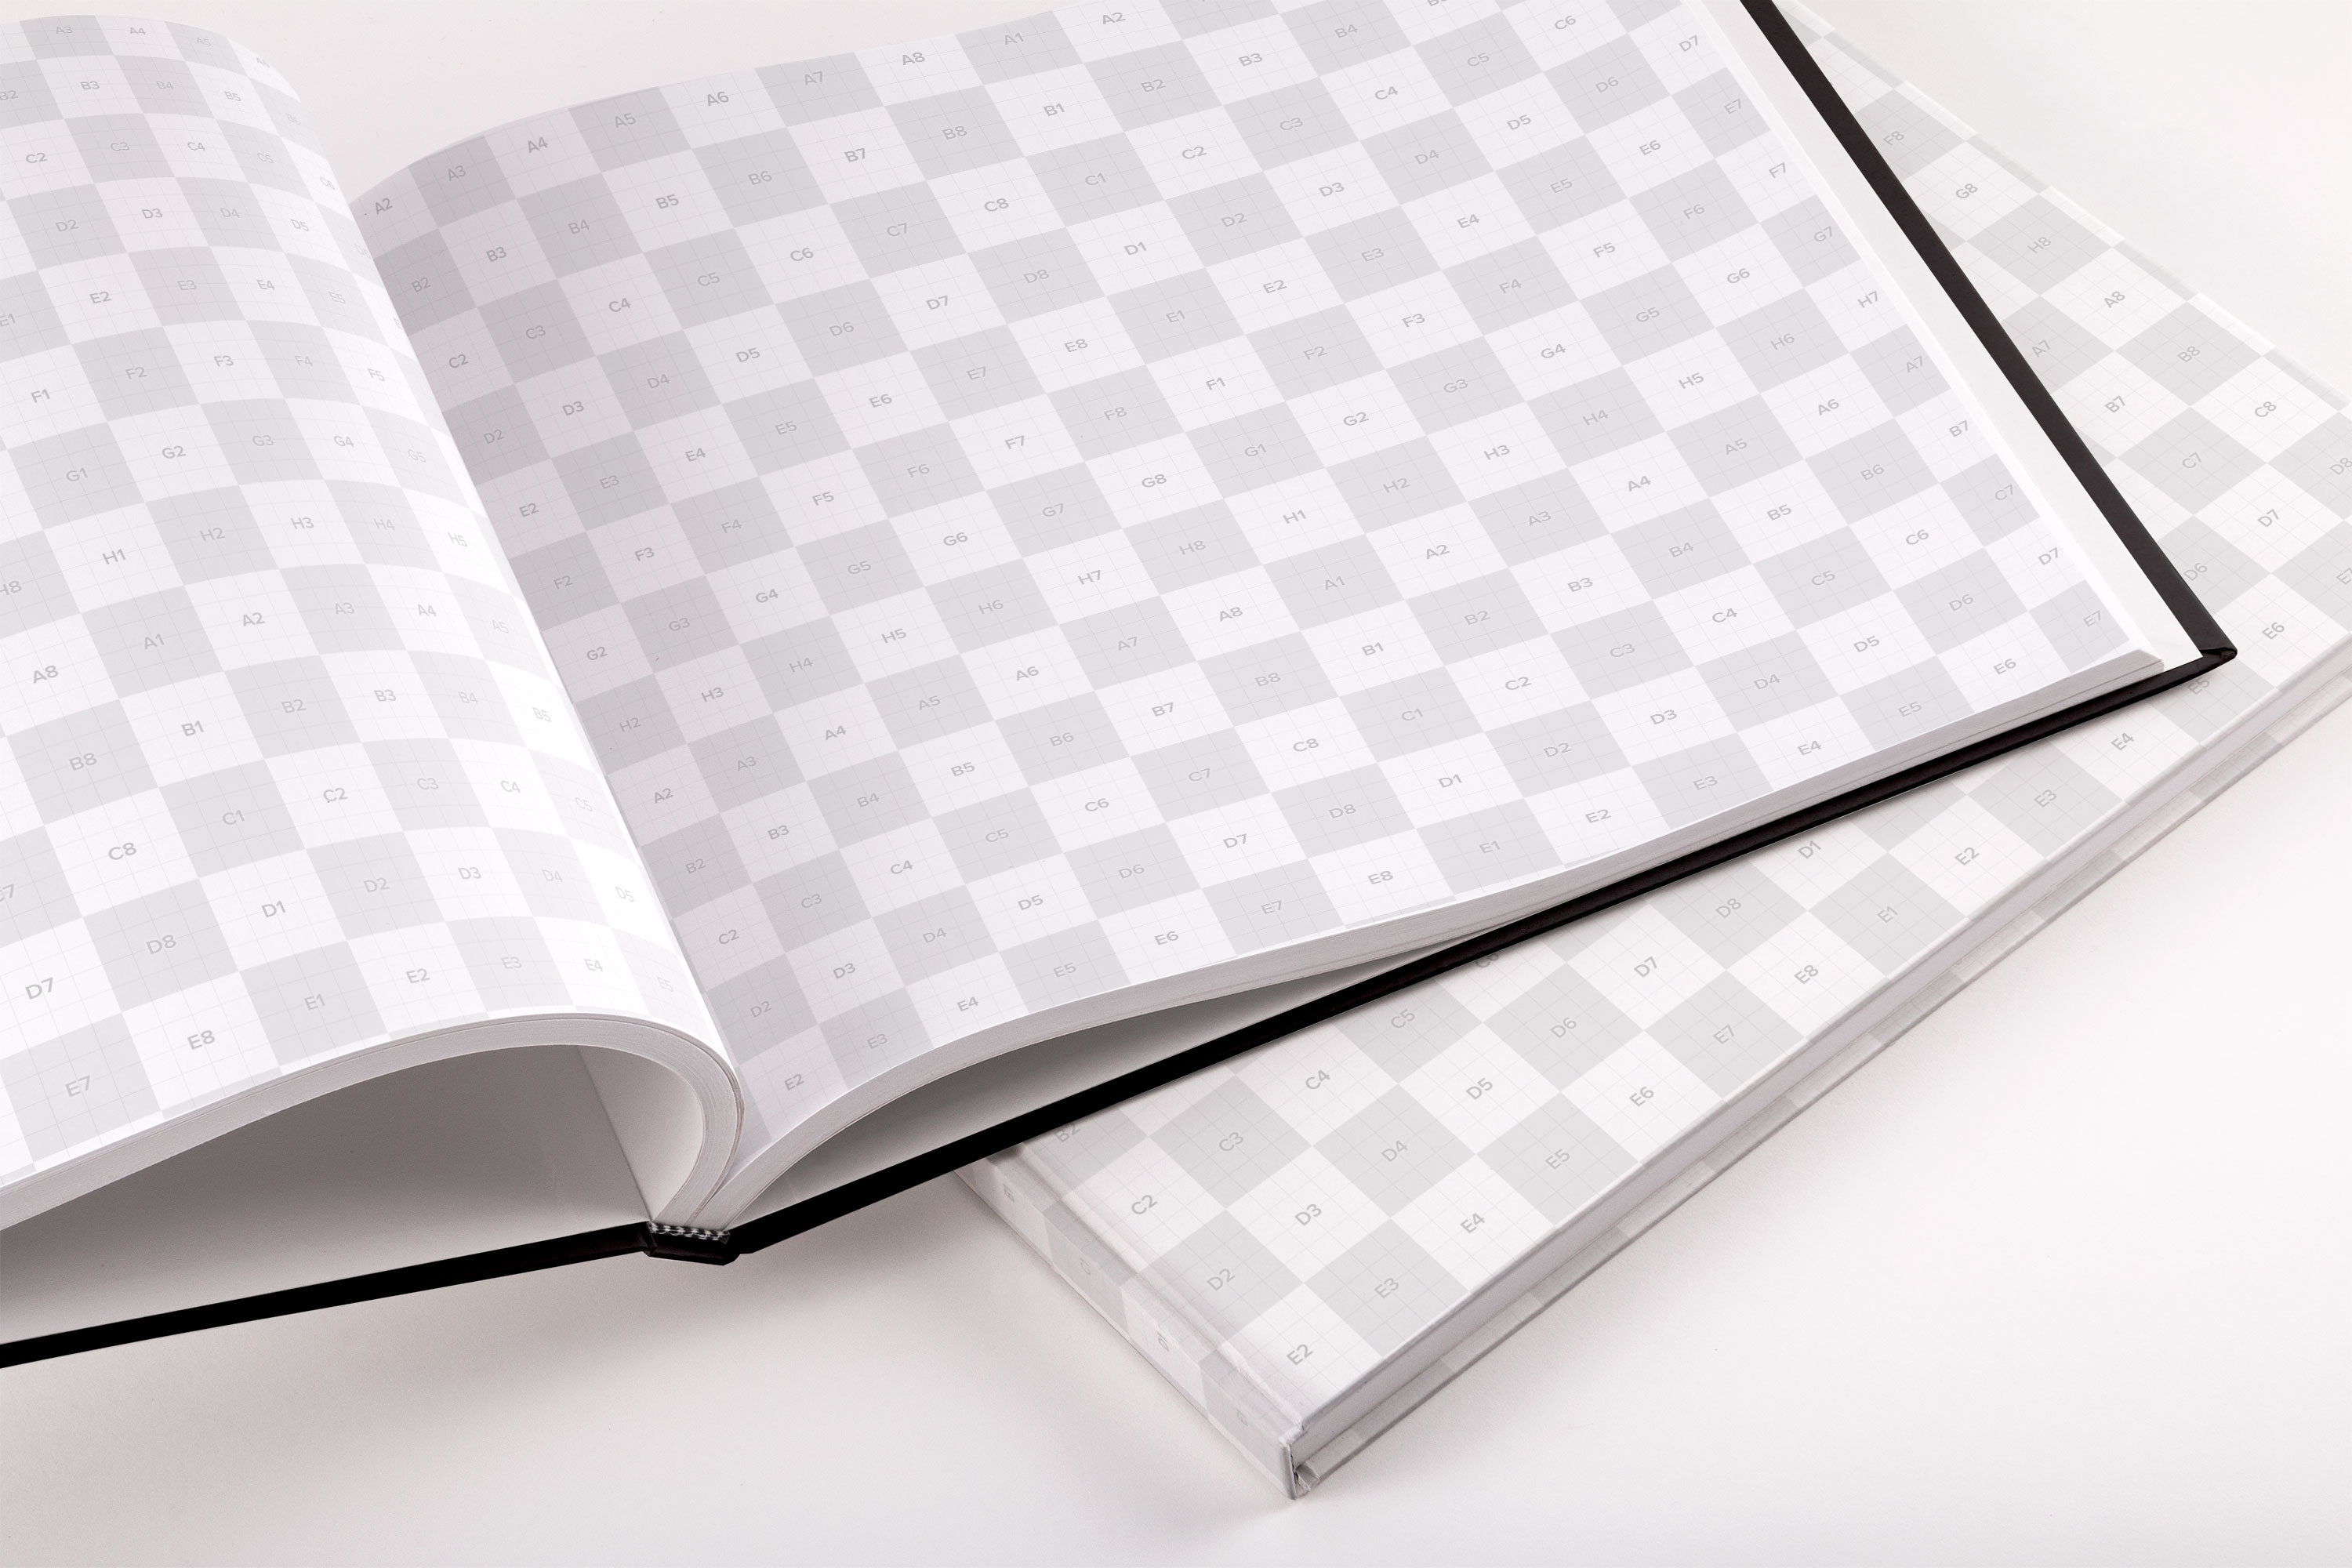 精装企业画册/产品目录内页版式设计PSD样机03 Hardcover Large Landscape Book PSD Mockup 03插图(1)